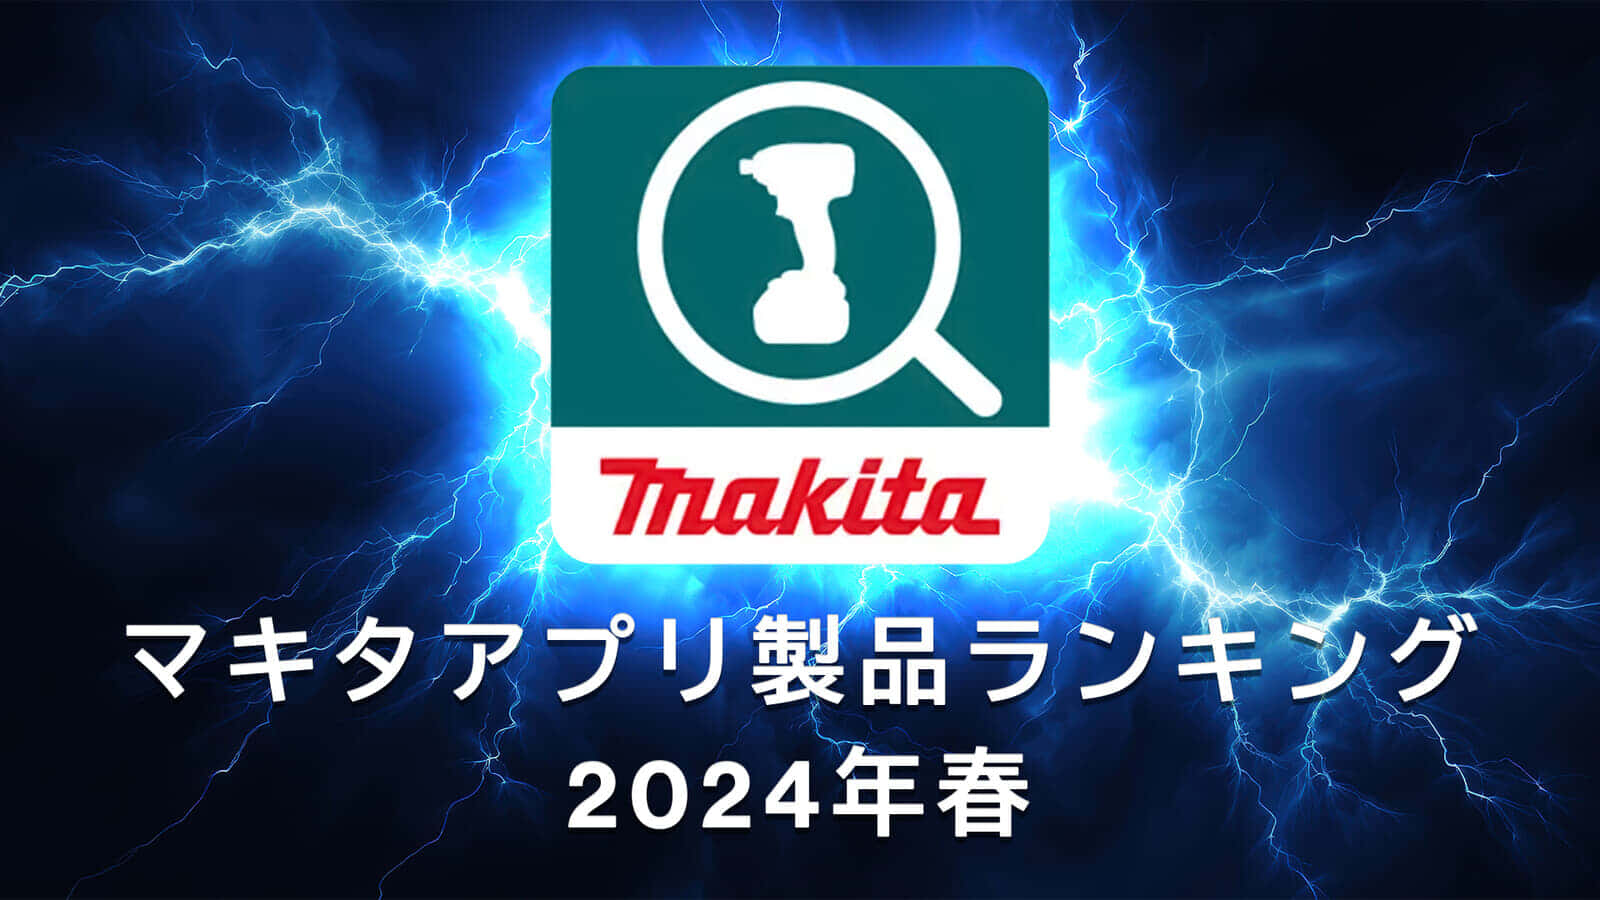 マキタ製品&営業所 紹介アプリ いいねランキング製品ダイジェスト【2024年春編】